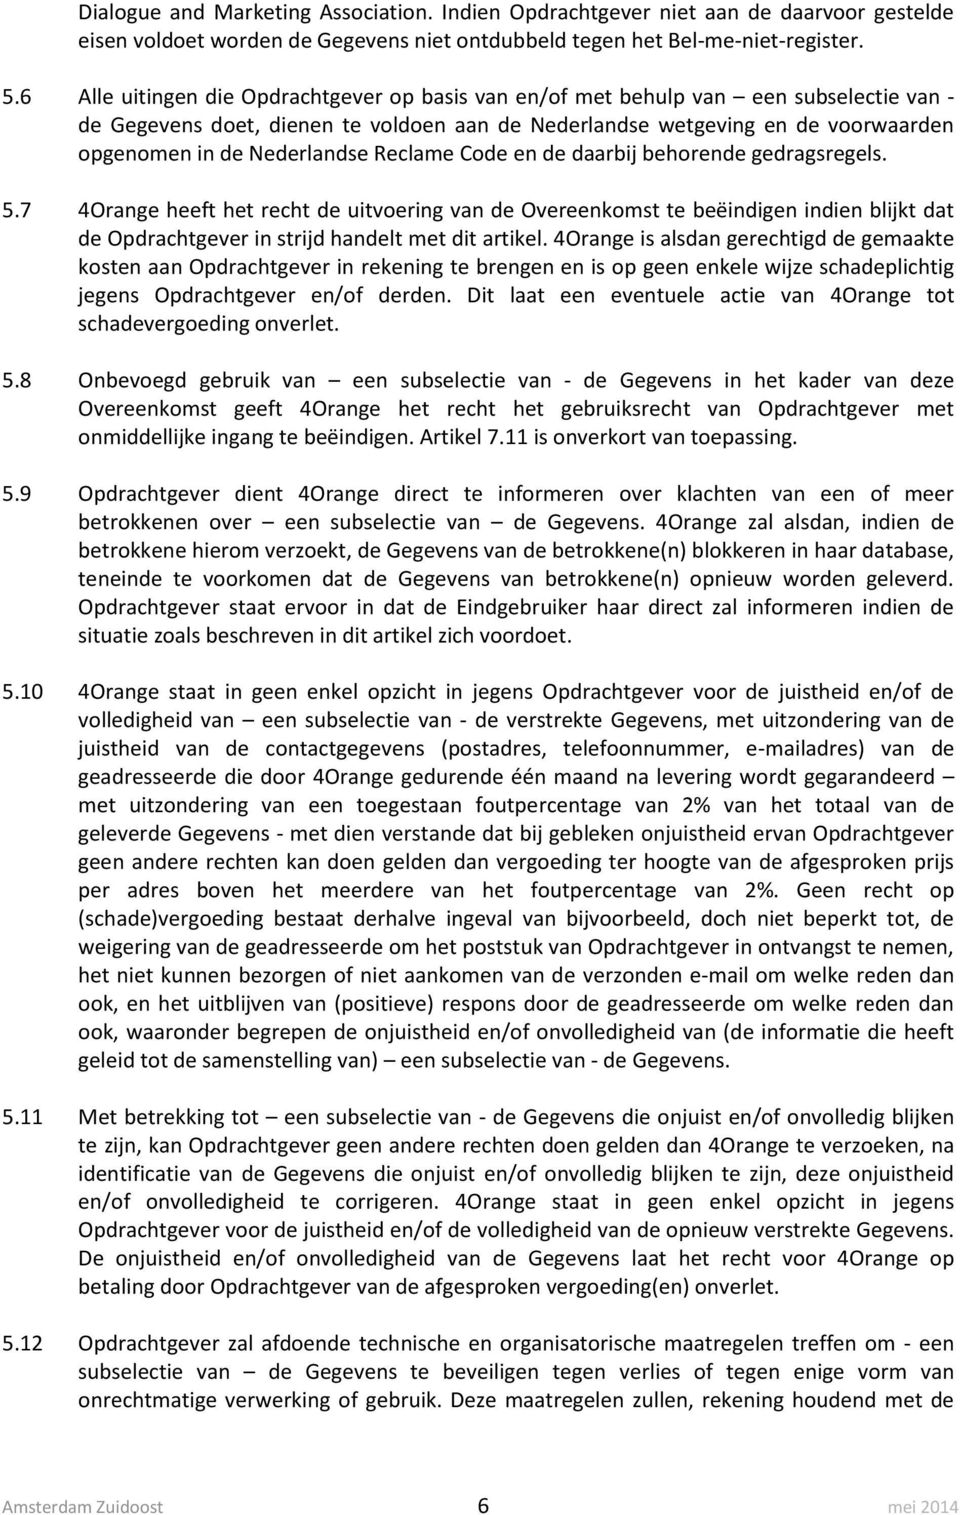 Nederlandse Reclame Code en de daarbij behorende gedragsregels. 5.